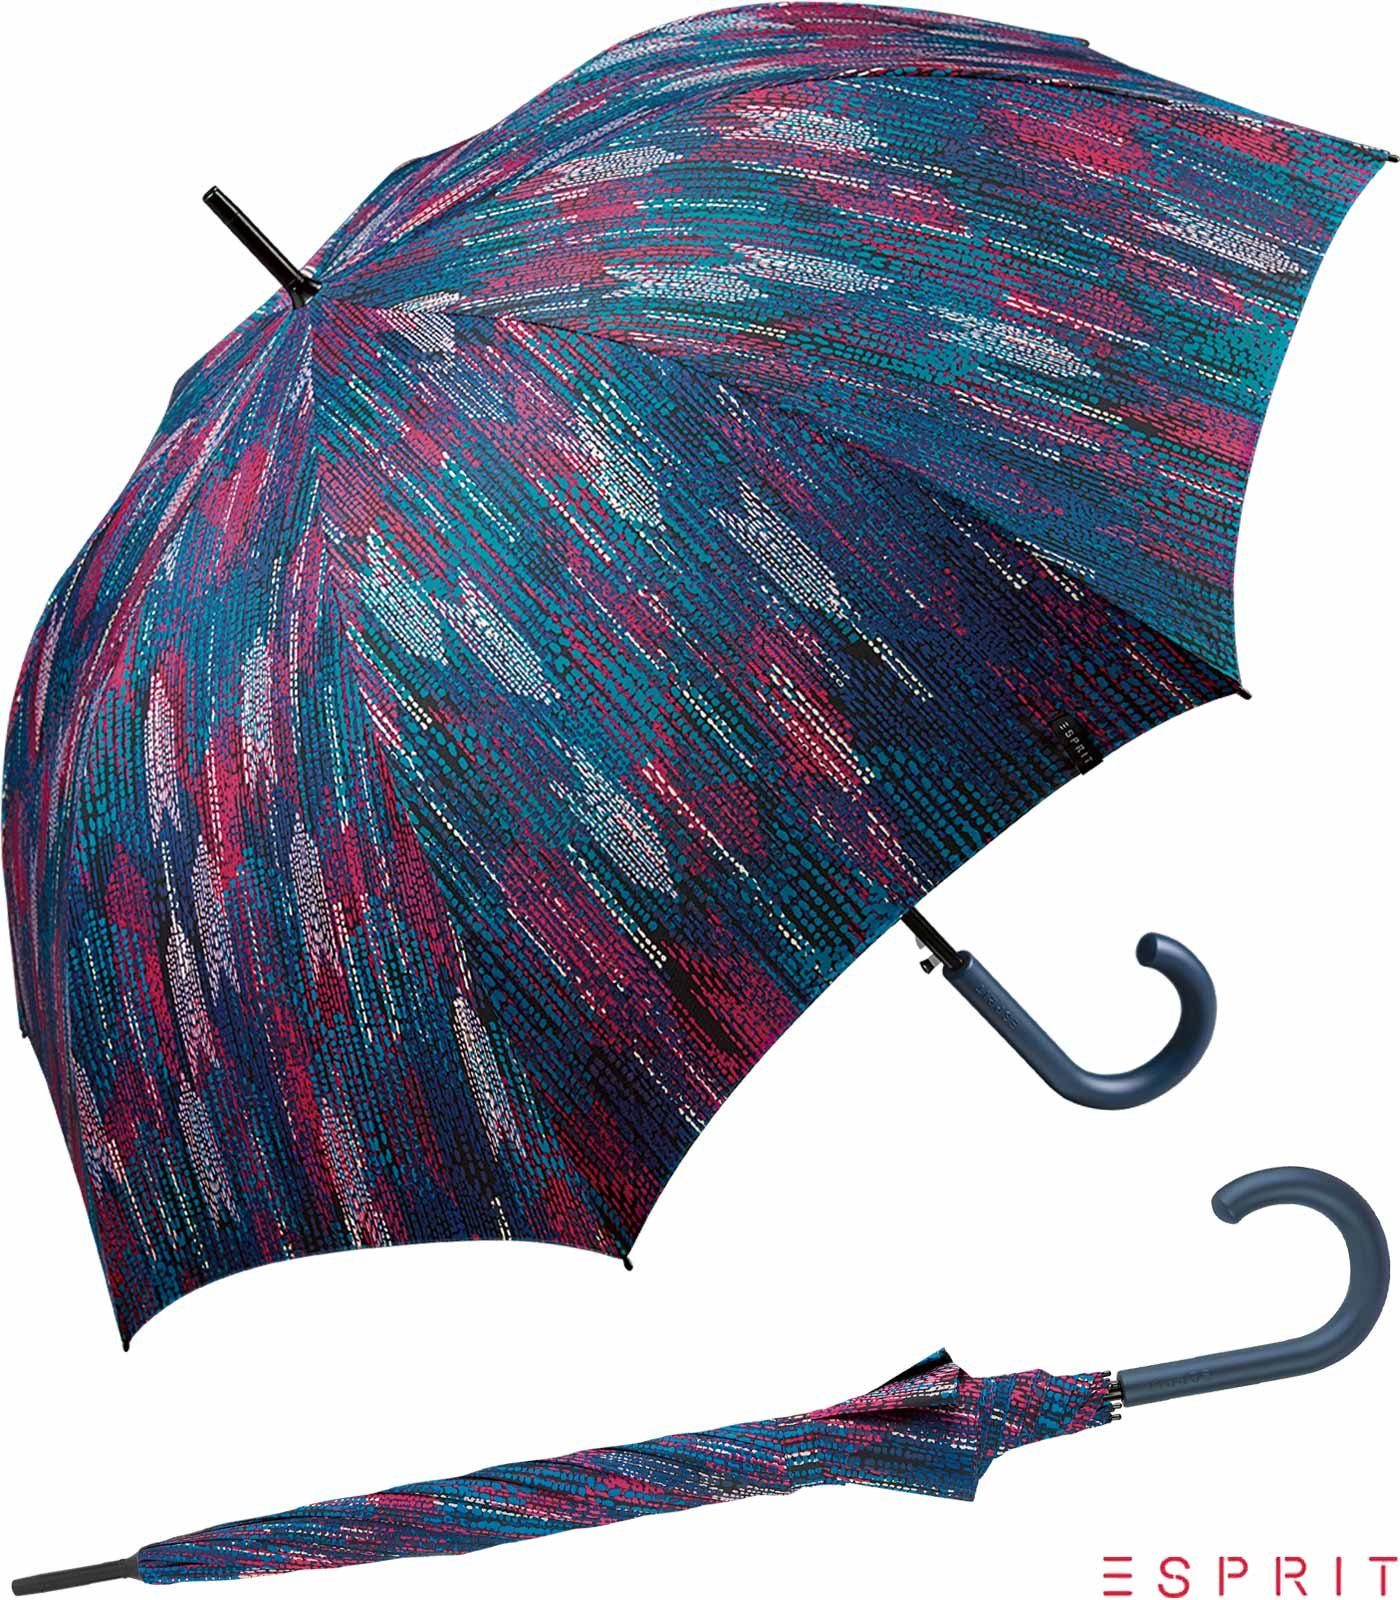 Esprit Langregenschirm Damen mit Auf-Automatik - Blurred Edges - ocean depths, groß, stabil, in bunter verwaschener Optik blau